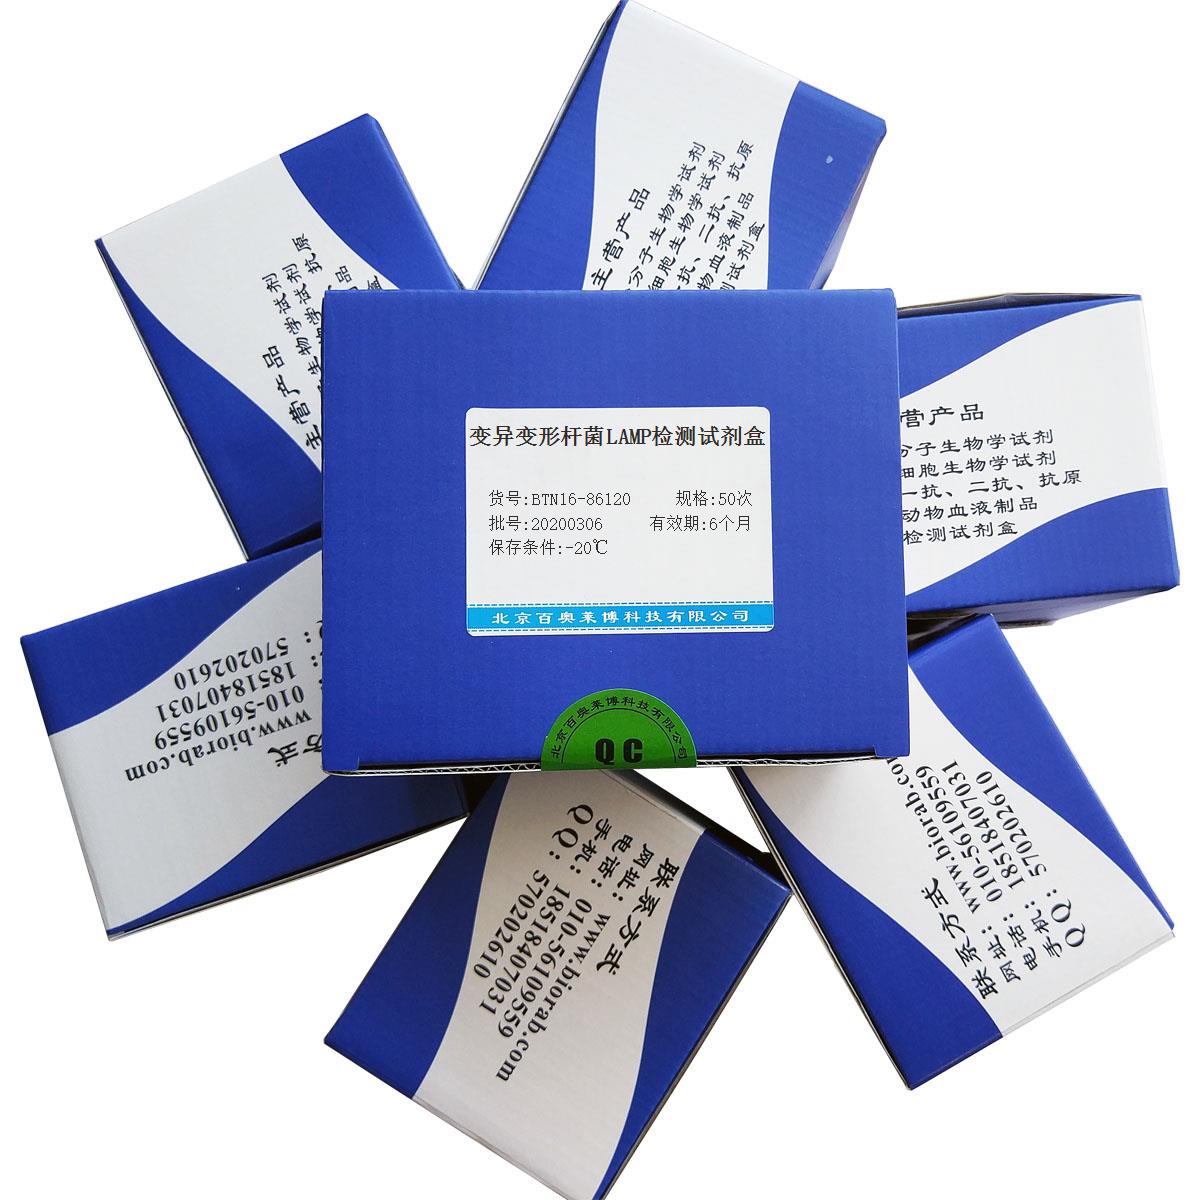 变异变形杆菌LAMP检测试剂盒北京价格